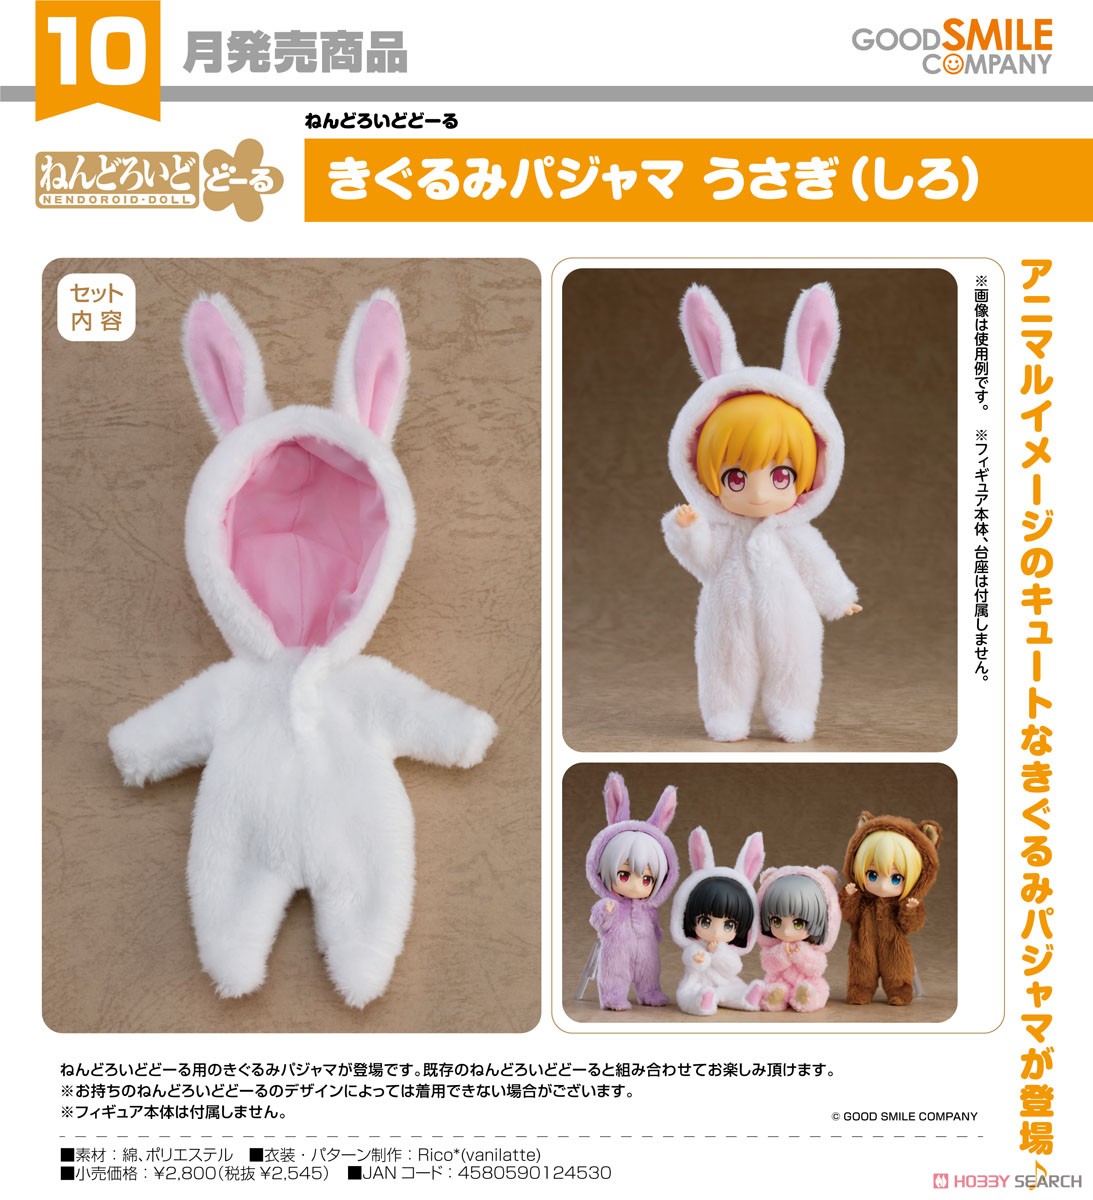 Nendoroid Doll: Kigurumi Pajamas (Rabbit - White) (PVC Figure) Item picture2